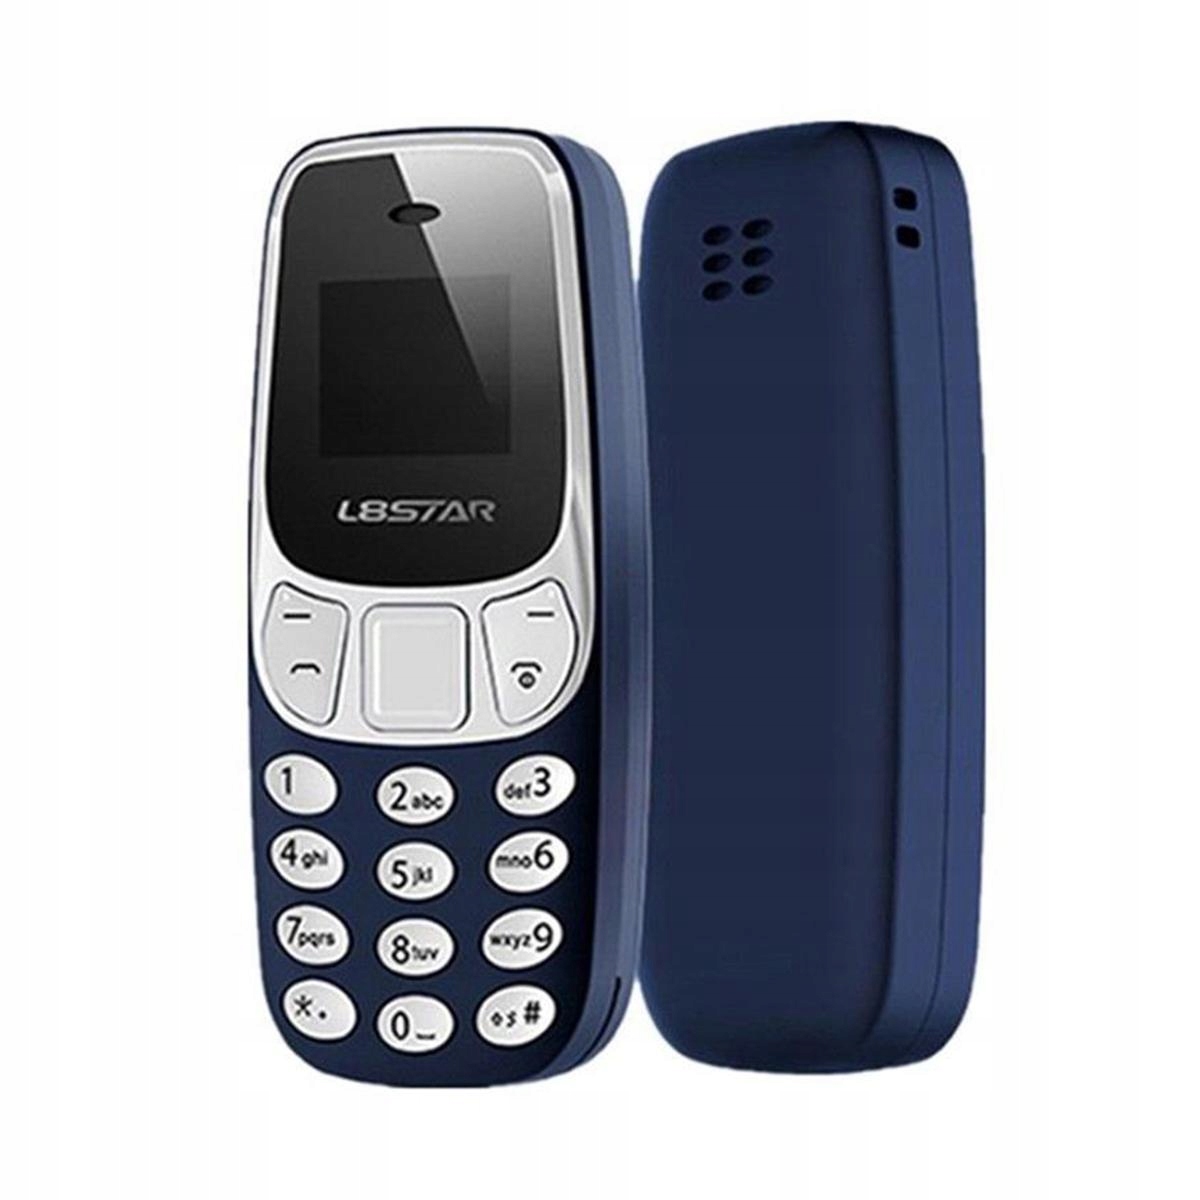 Микро GSM телефон изменение голоса DUAL SIM L8STAR En тип мобильного телефона